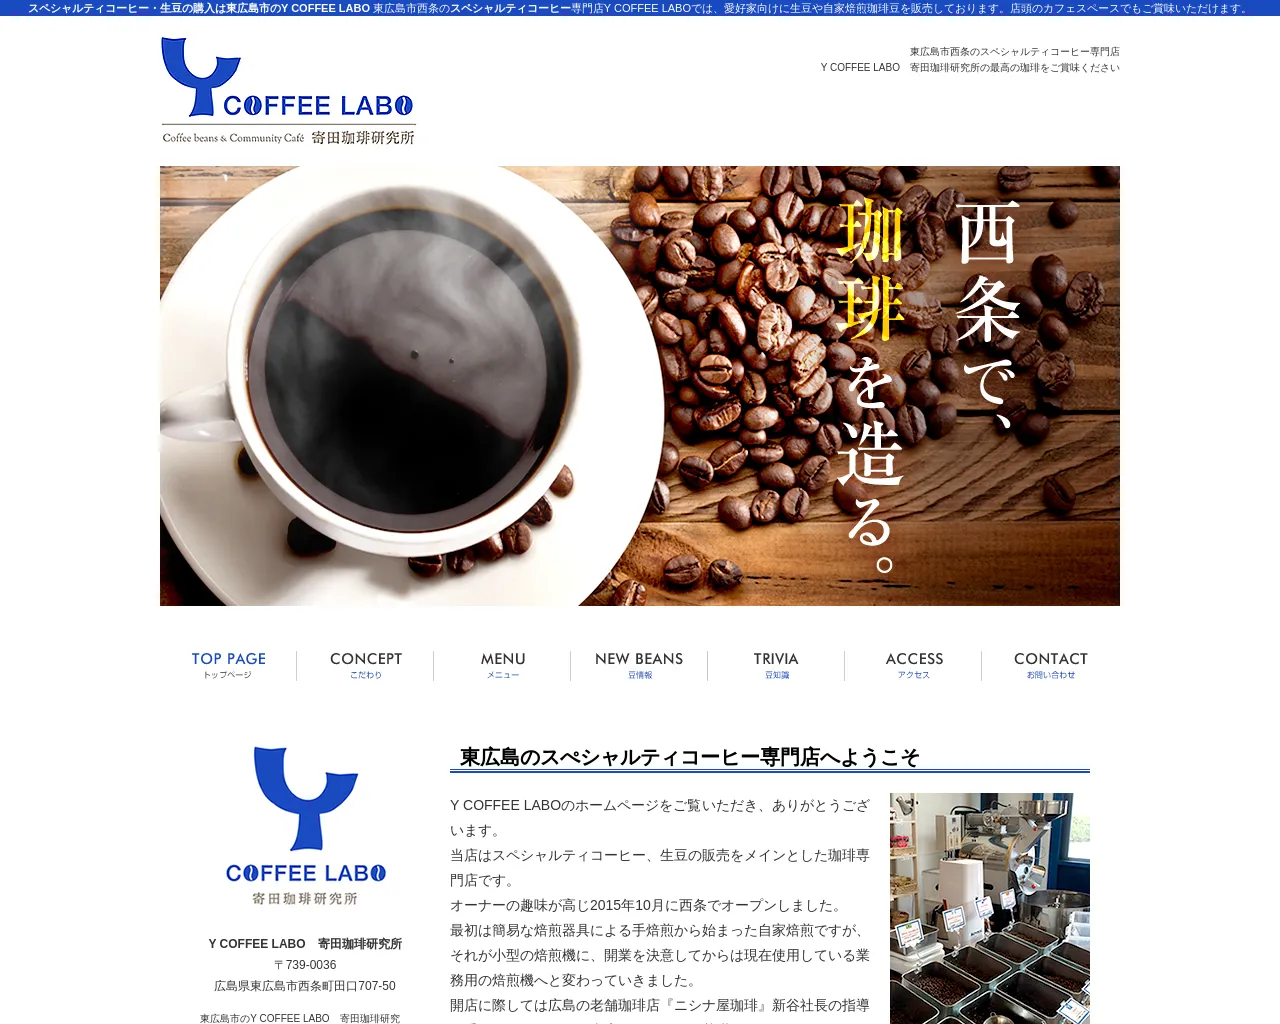 Y COFFEE LABO site